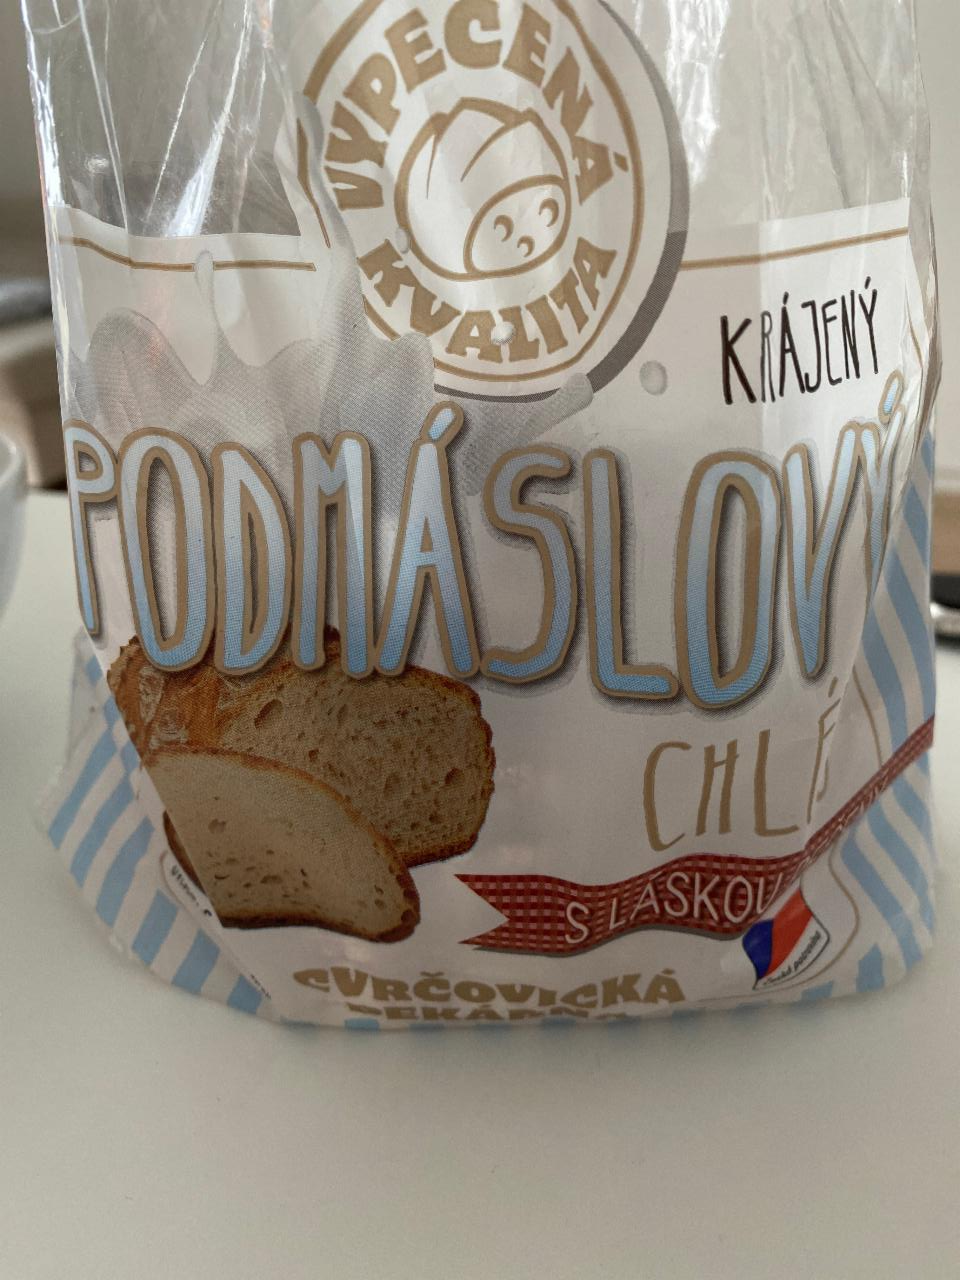 Fotografie - Podmáslový chléb Cvrčovická pekárna